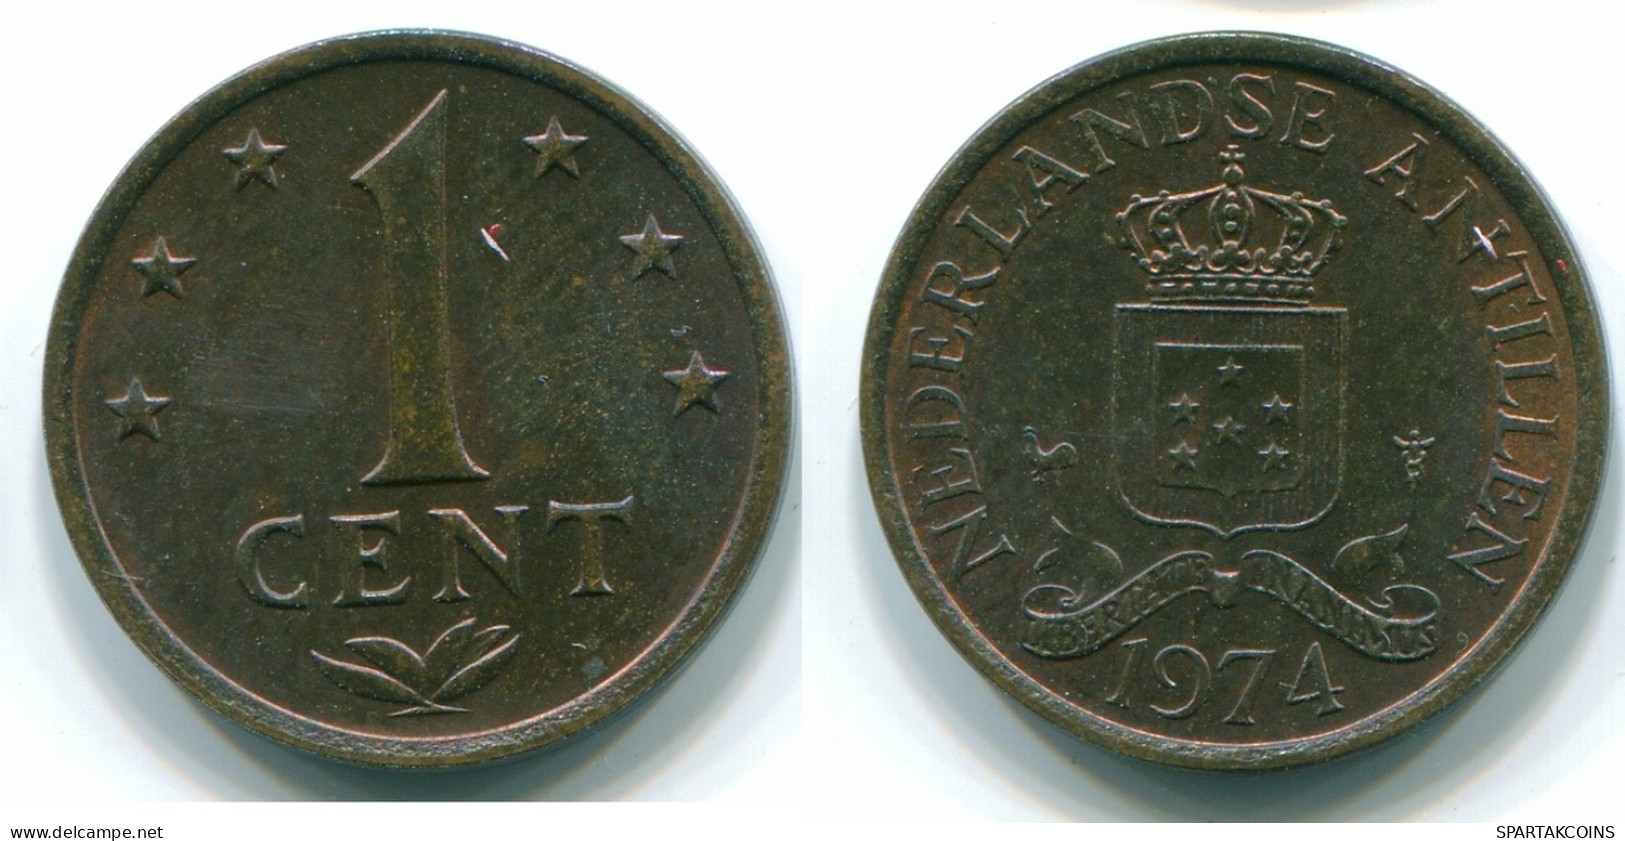 1 CENT 1974 ANTILLES NÉERLANDAISES Bronze Colonial Pièce #S10664.F.A - Netherlands Antilles